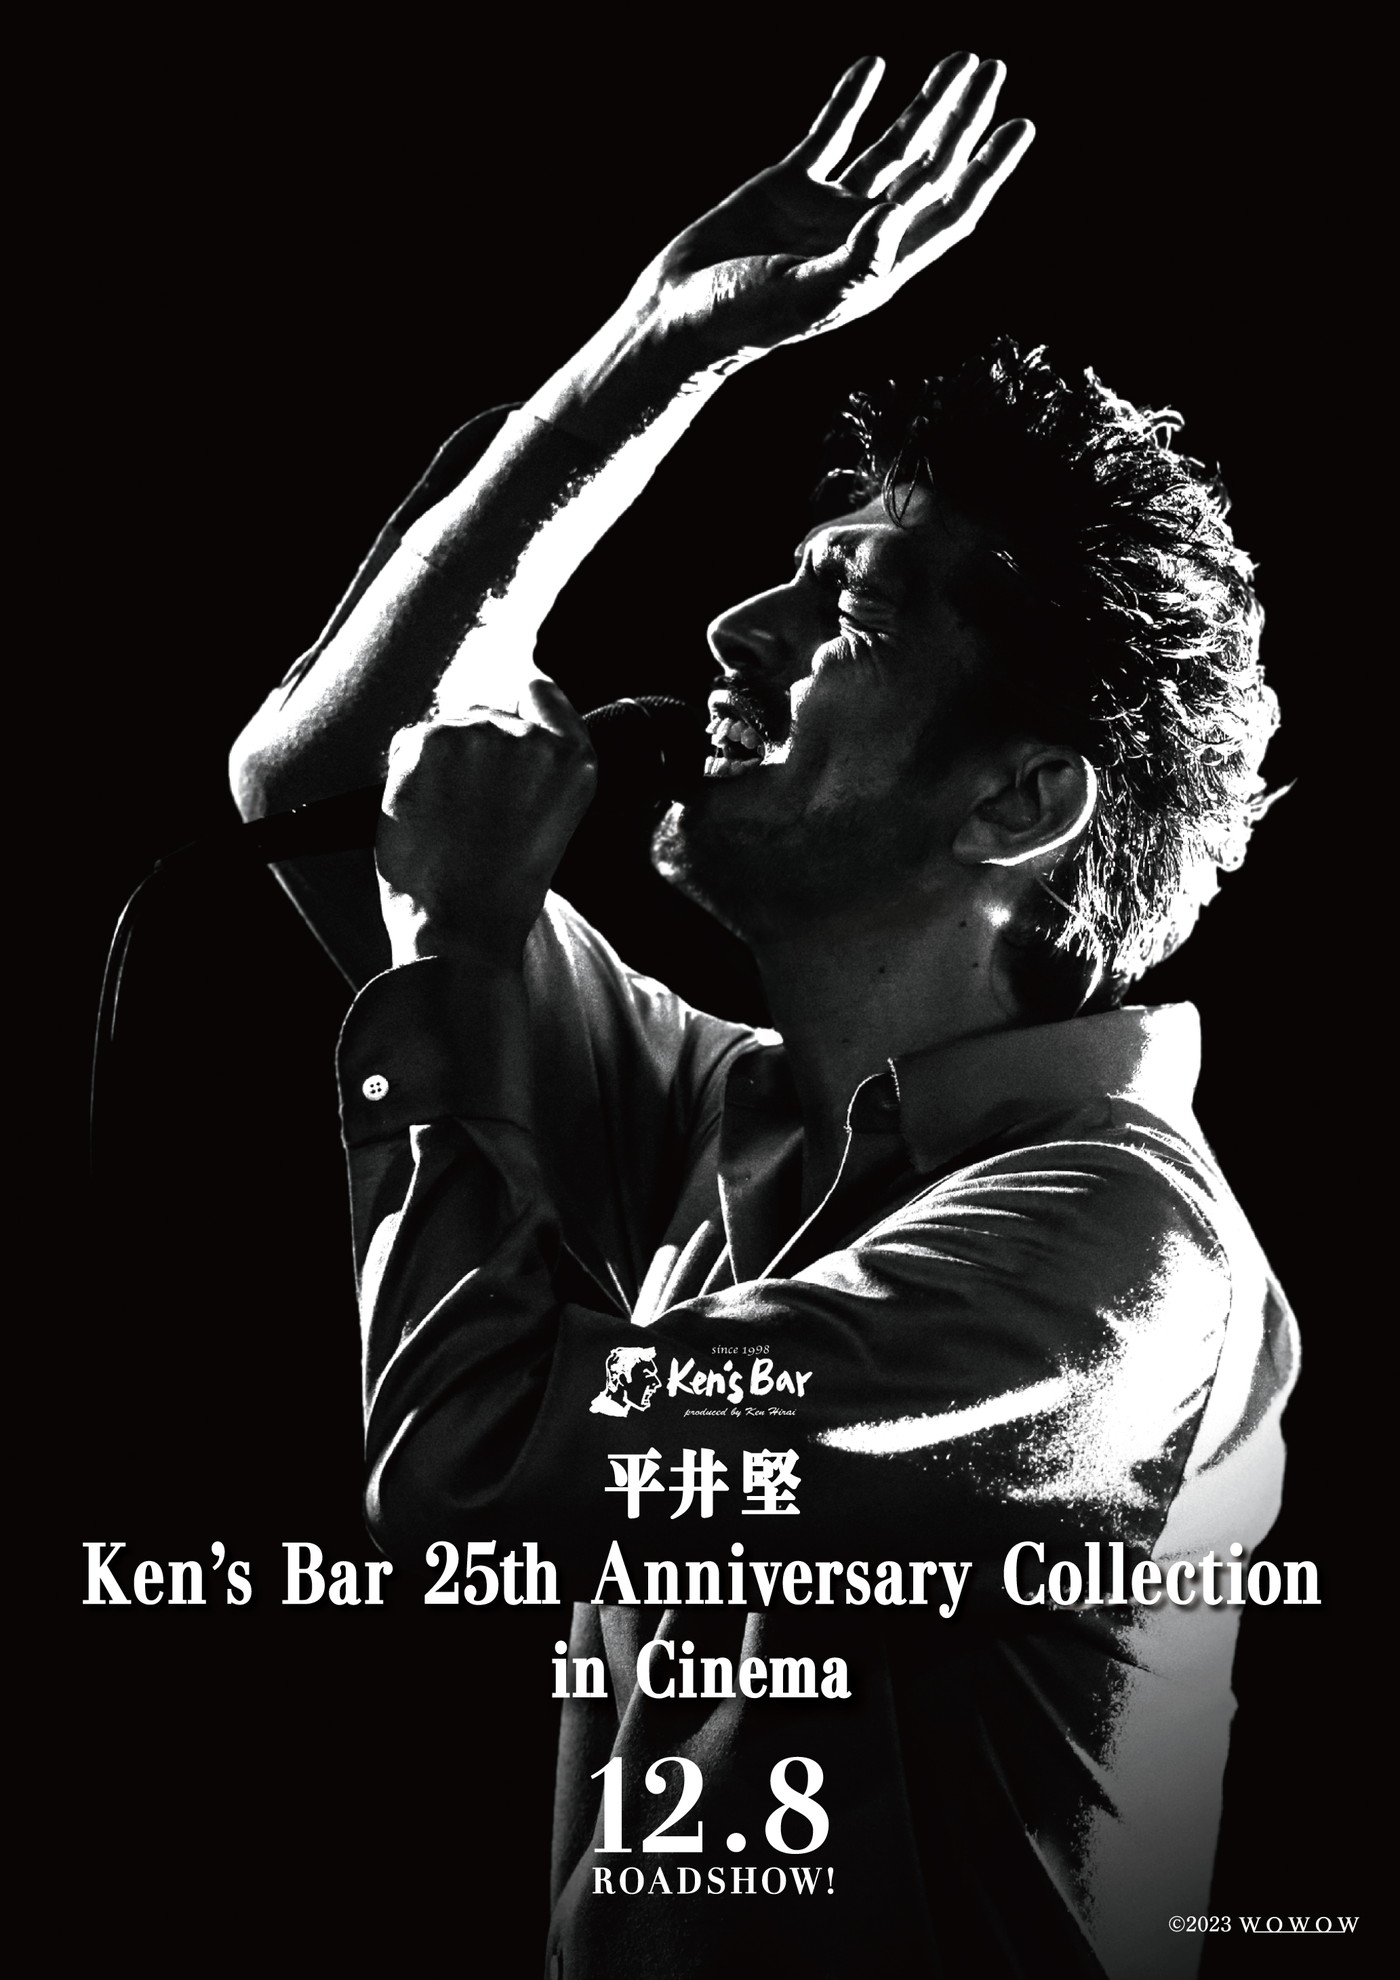 『平井堅 Ken’s Bar 25th Anniversary Collection in Cinema』の期間限定劇場公開が決定！ 予告映像も解禁